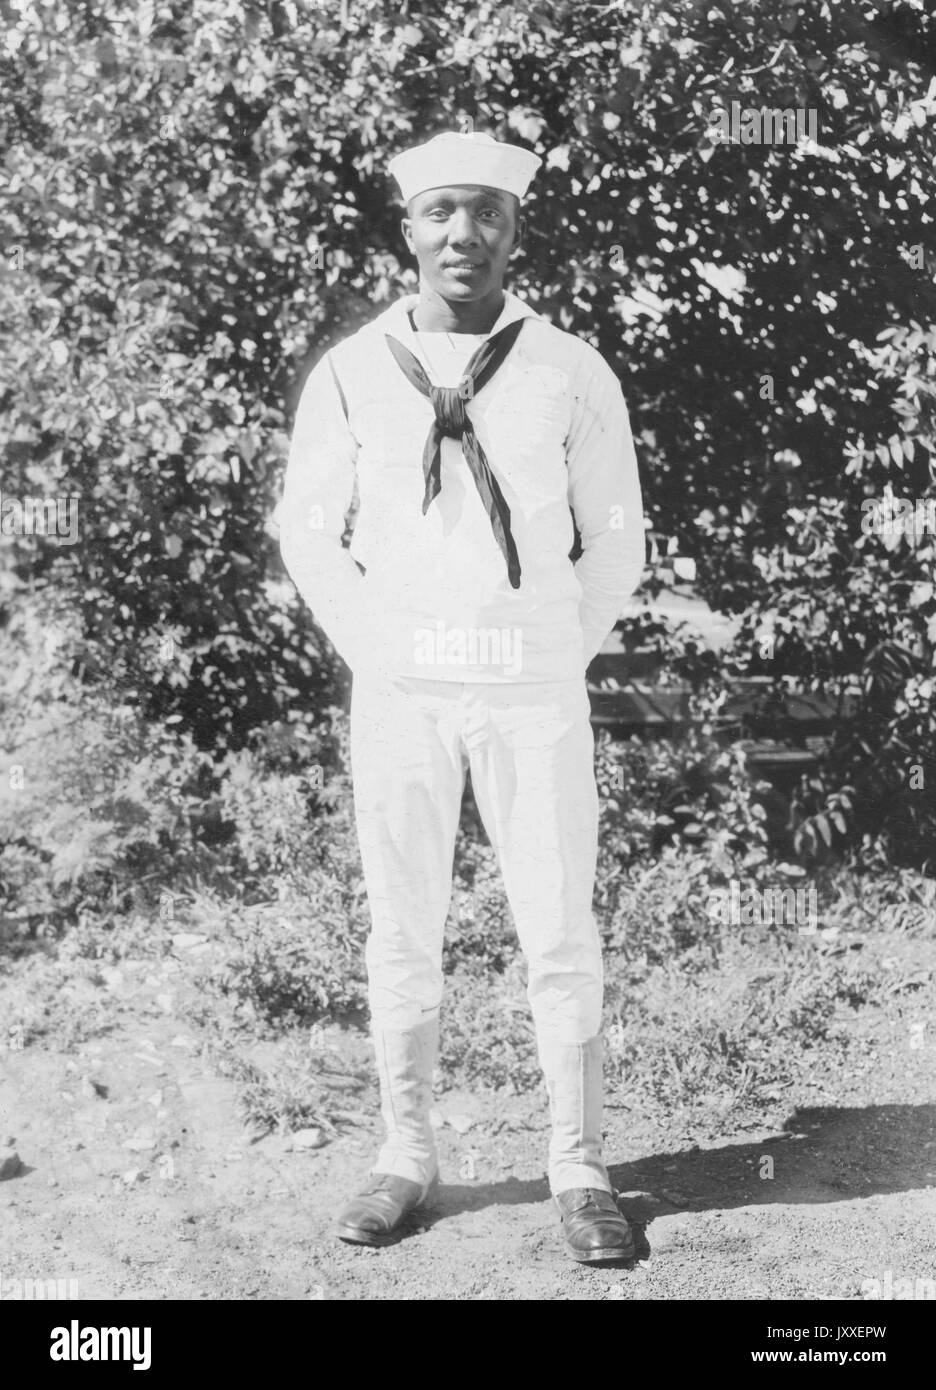 Ritratto di un velista americano della Marina Africana in piedi davanti ad arbustia, è mani sono rimboccate dietro la sua schiena e sta portando una uniforme di Sailor di colore chiaro, 1920. Foto Stock